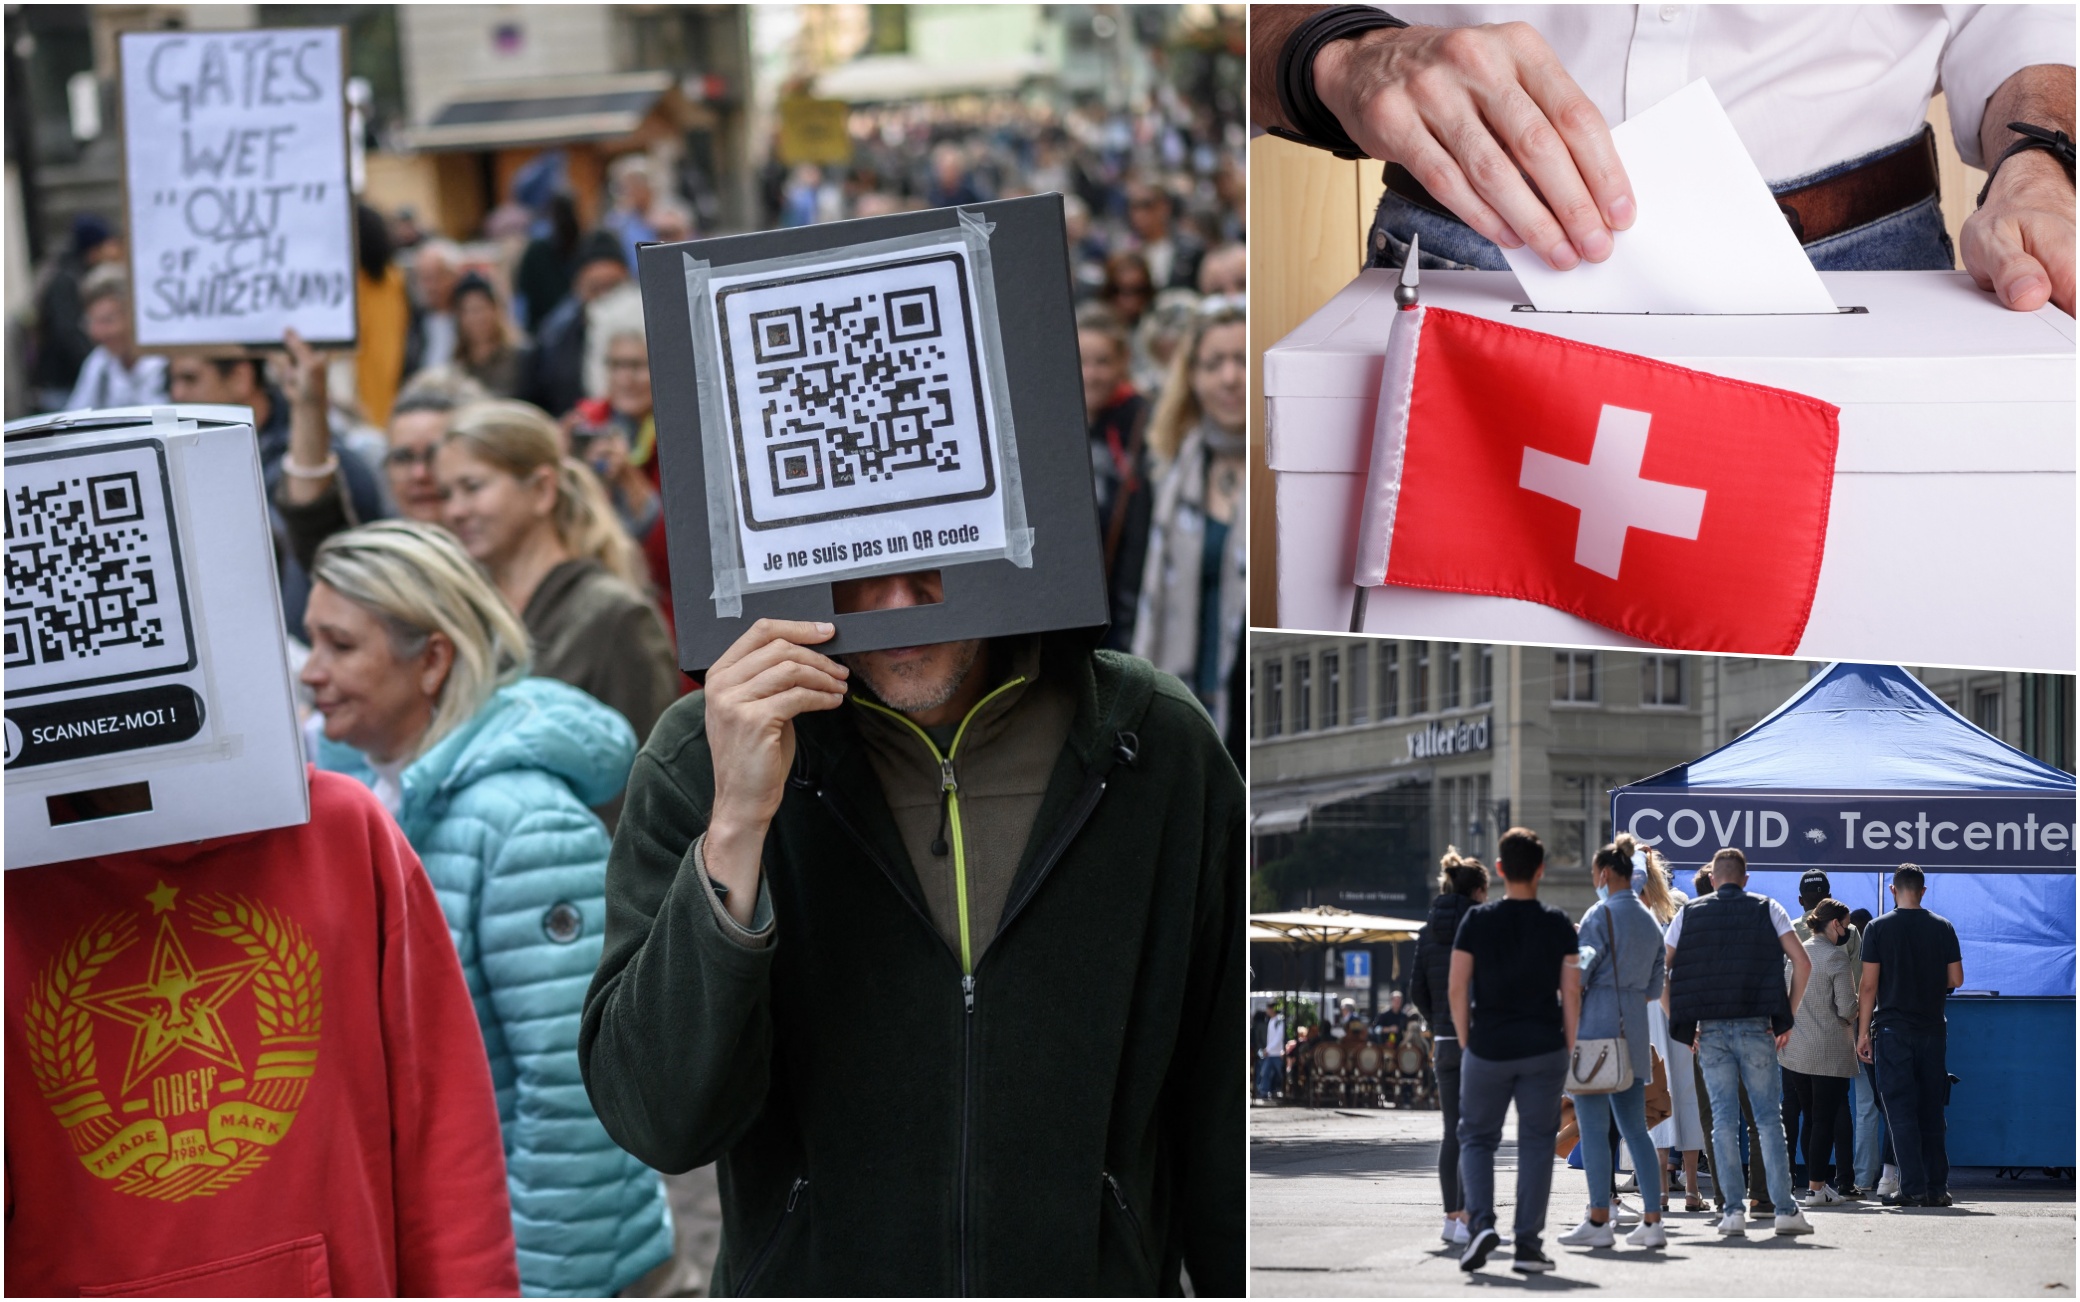 La Svizzera al referendum sul Covid: si vota per confermare o abolire il Green pass